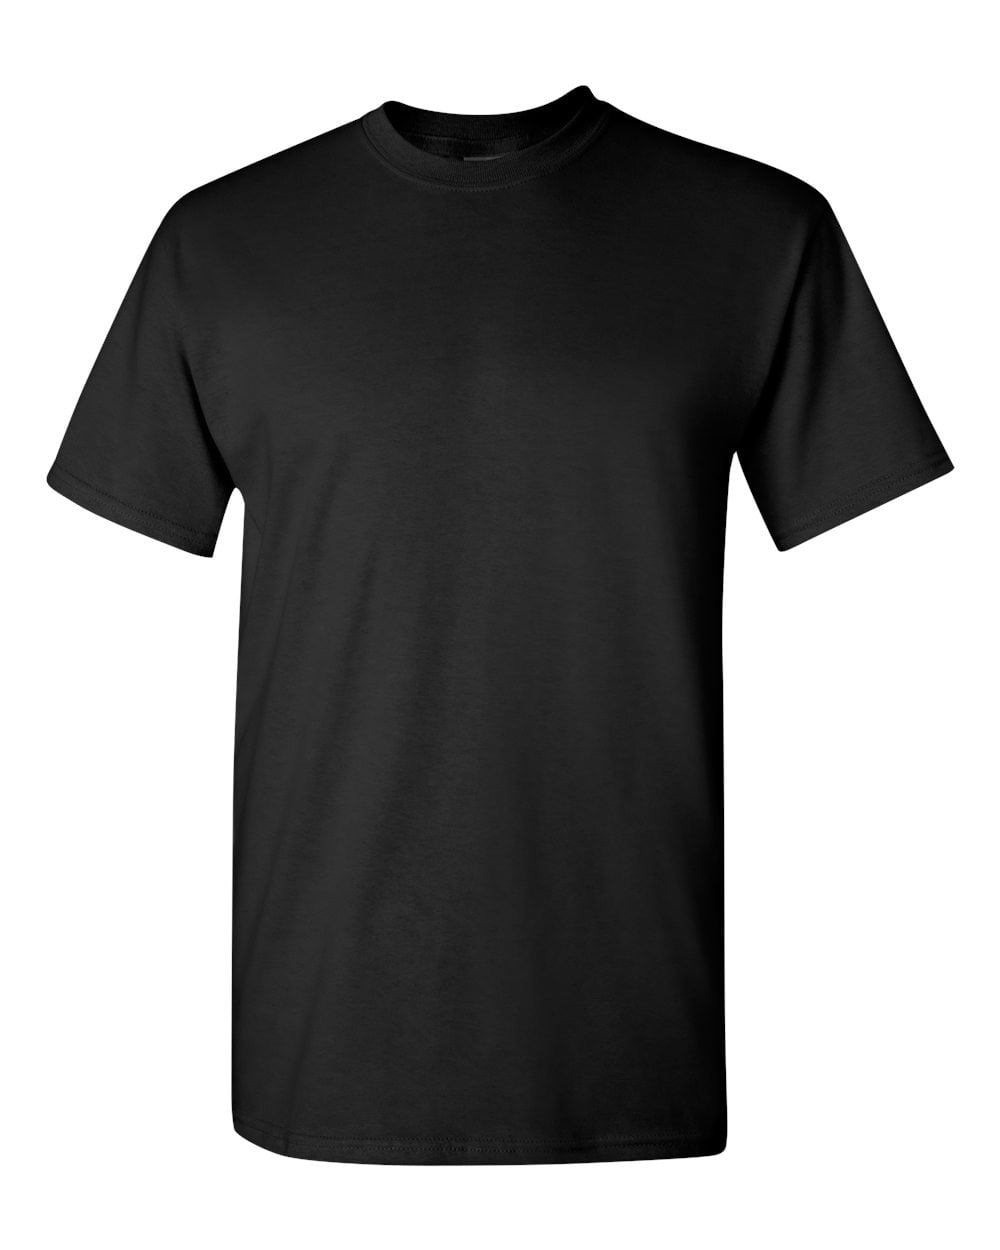 Heavy Cotton Multi Colors T-Shirt Color Black 5X-Large Size - Walmart.com